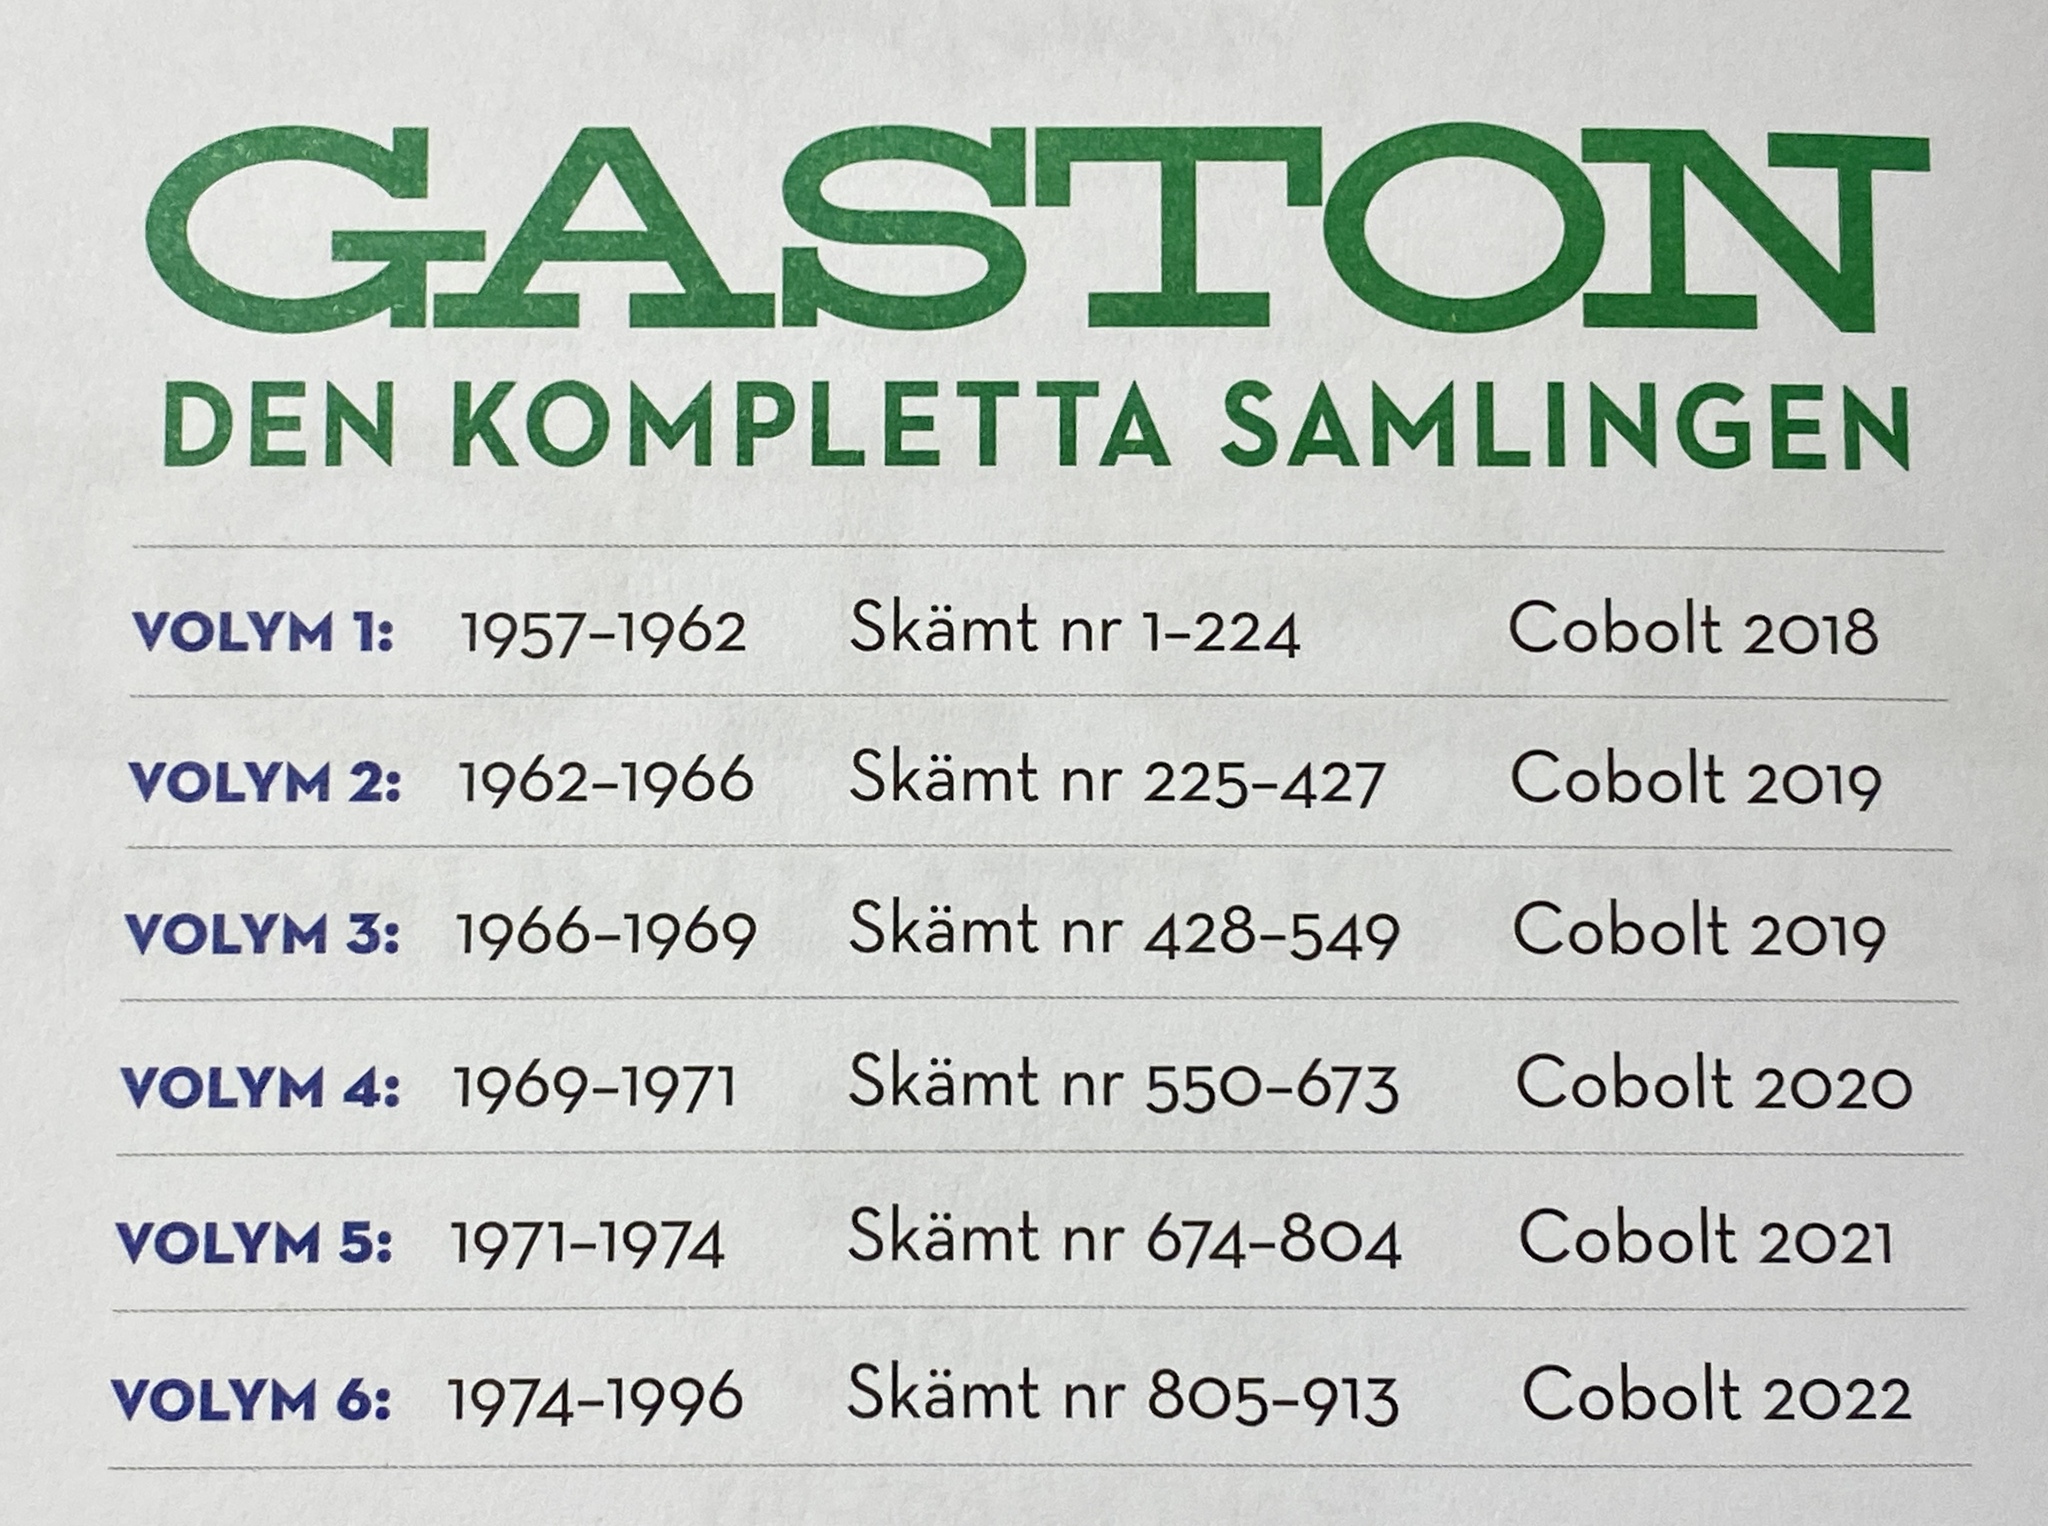 GASTON: DEN KOMPLETTA SAMLINGEN 3, 1966-1969